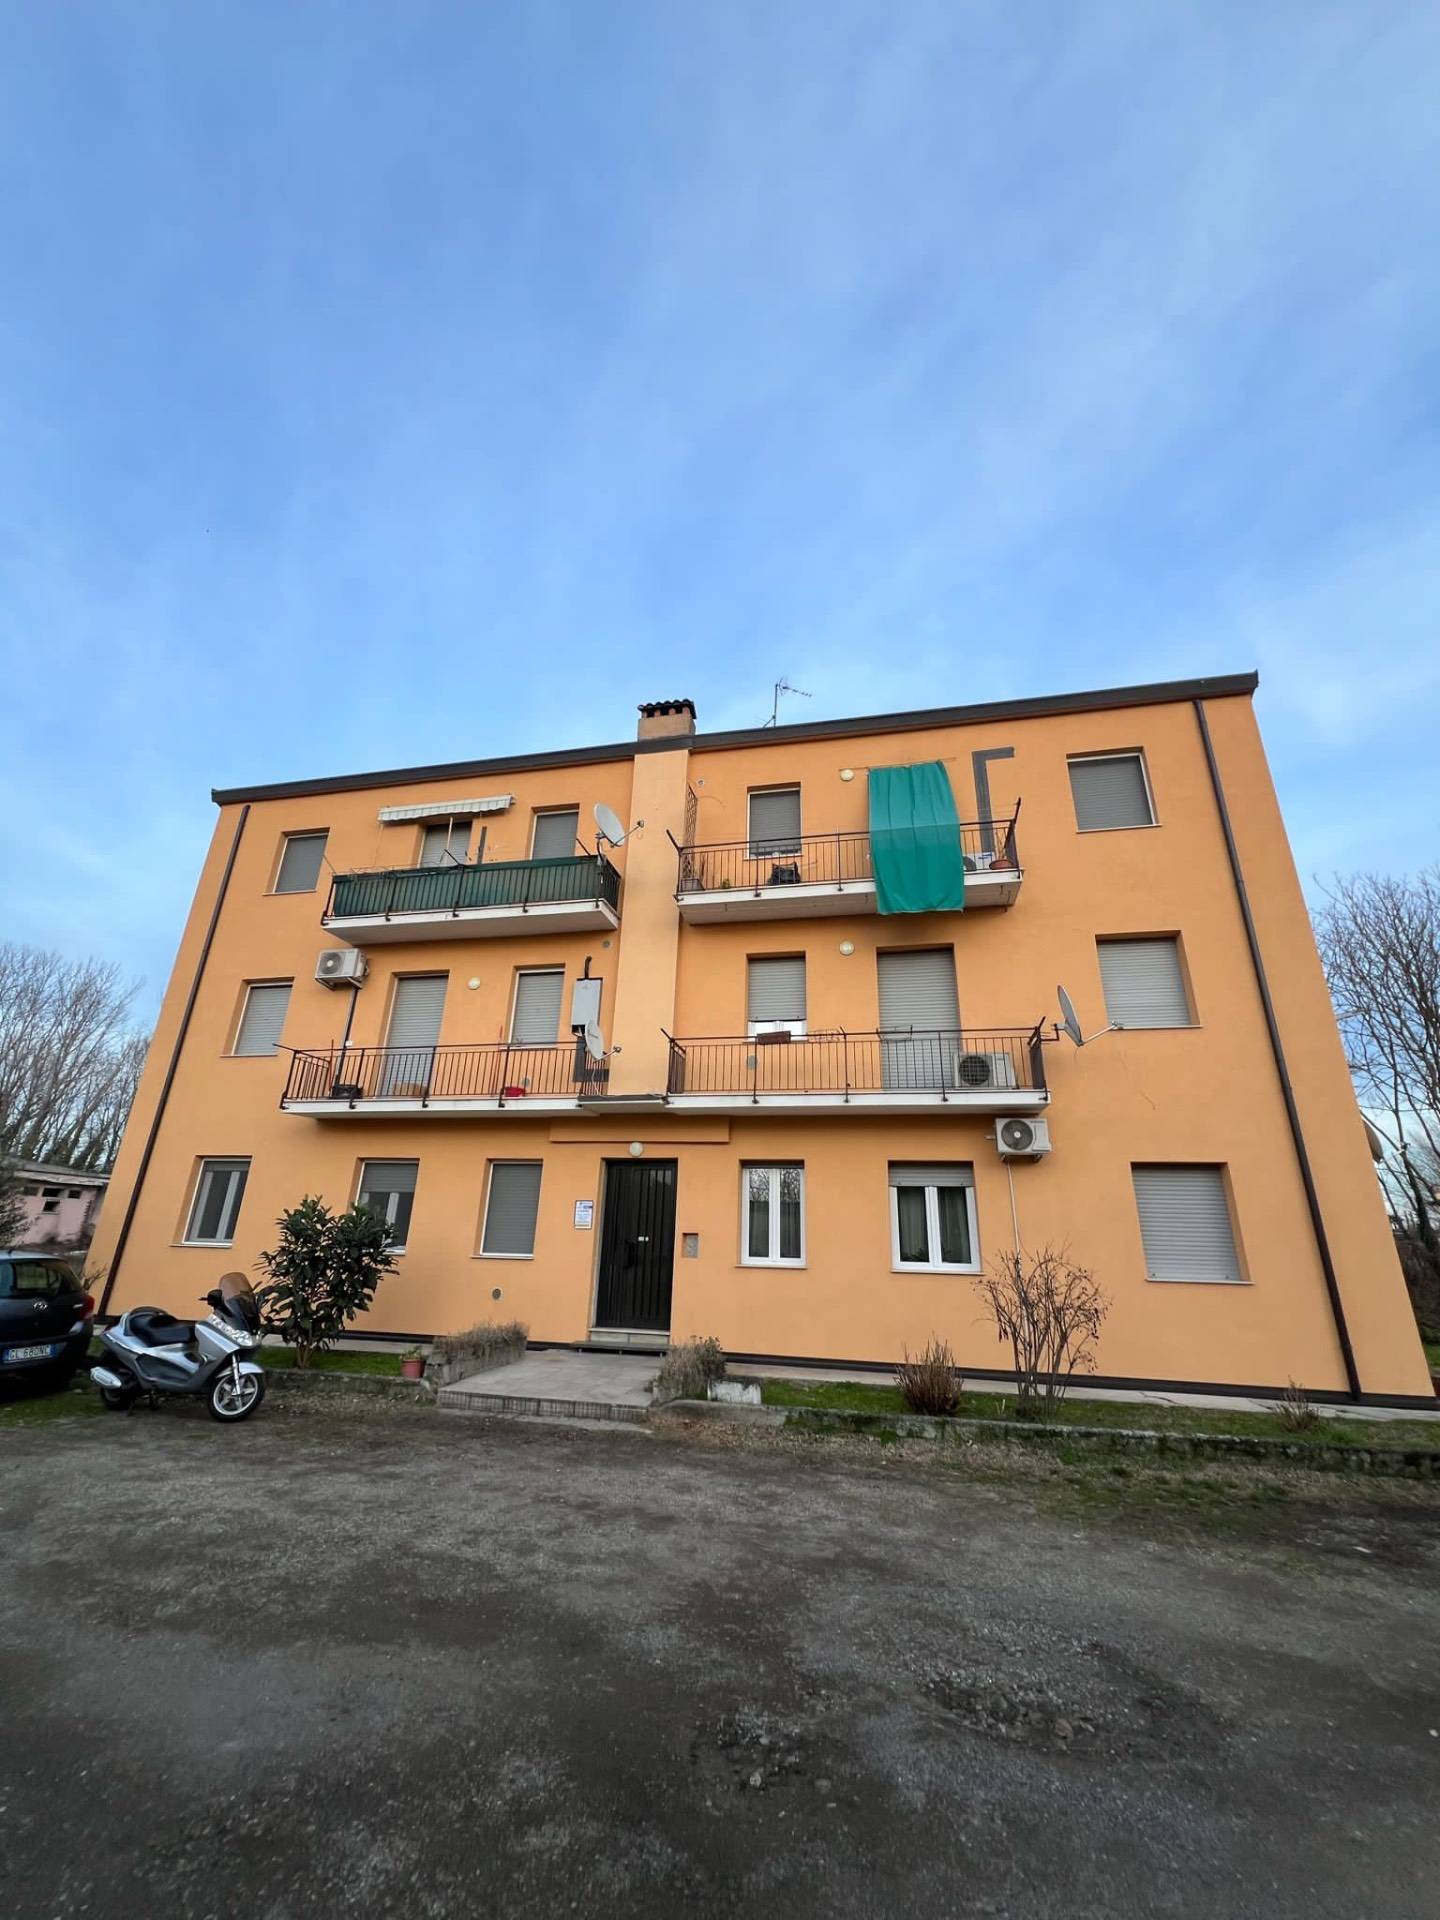 Appartamento in vendita a Giussago, 2 locali, prezzo € 90.000 | PortaleAgenzieImmobiliari.it